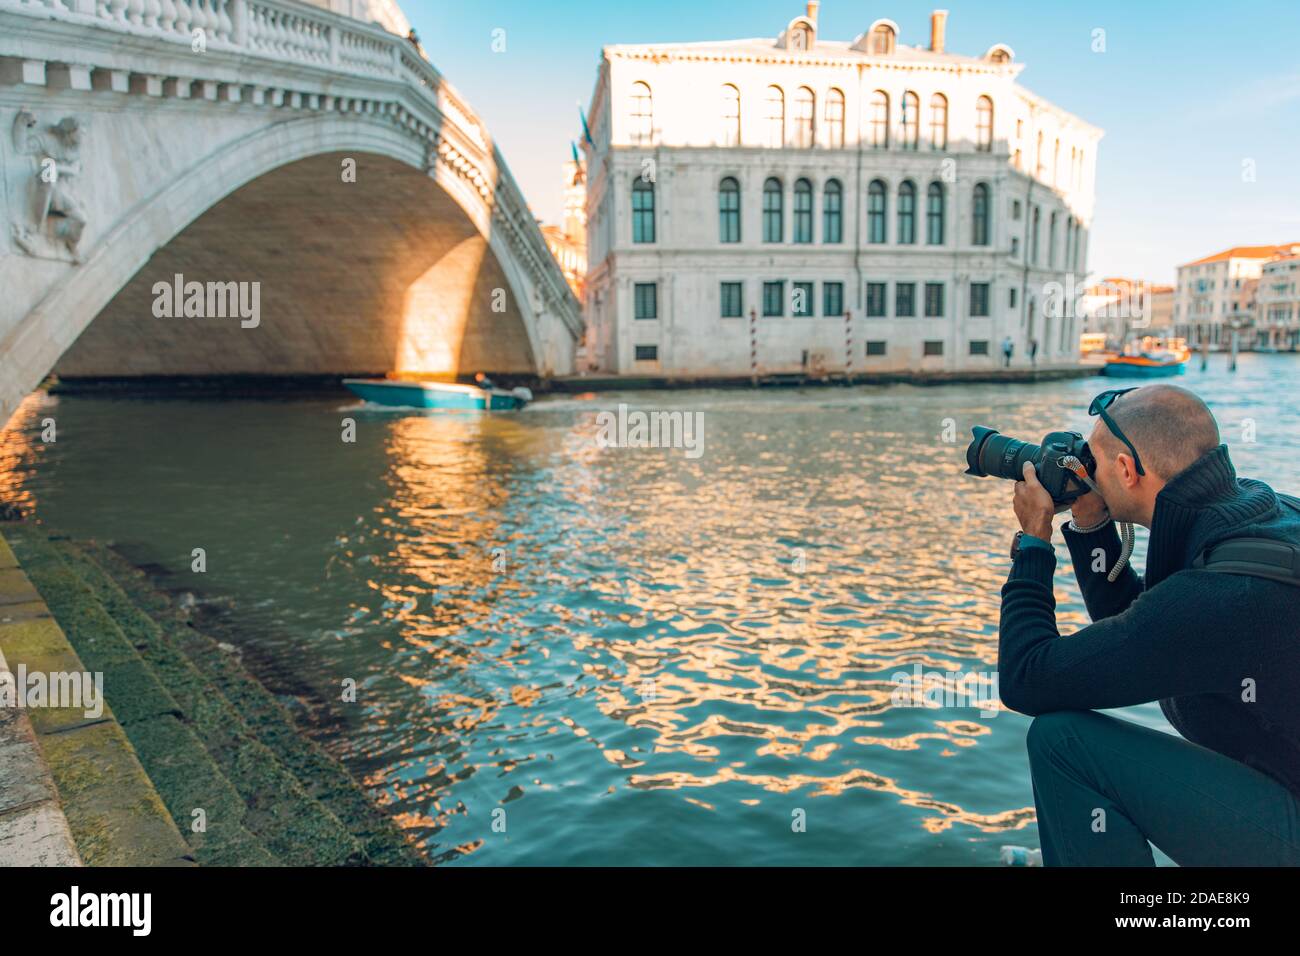 Tourist fotografiert in Venedig. Fotograf fotografiert den Canal Grande in Venedig, Rialtobrücke abstraktes Sonnenlicht, künstlerisches historisches Gebäude Stockfoto